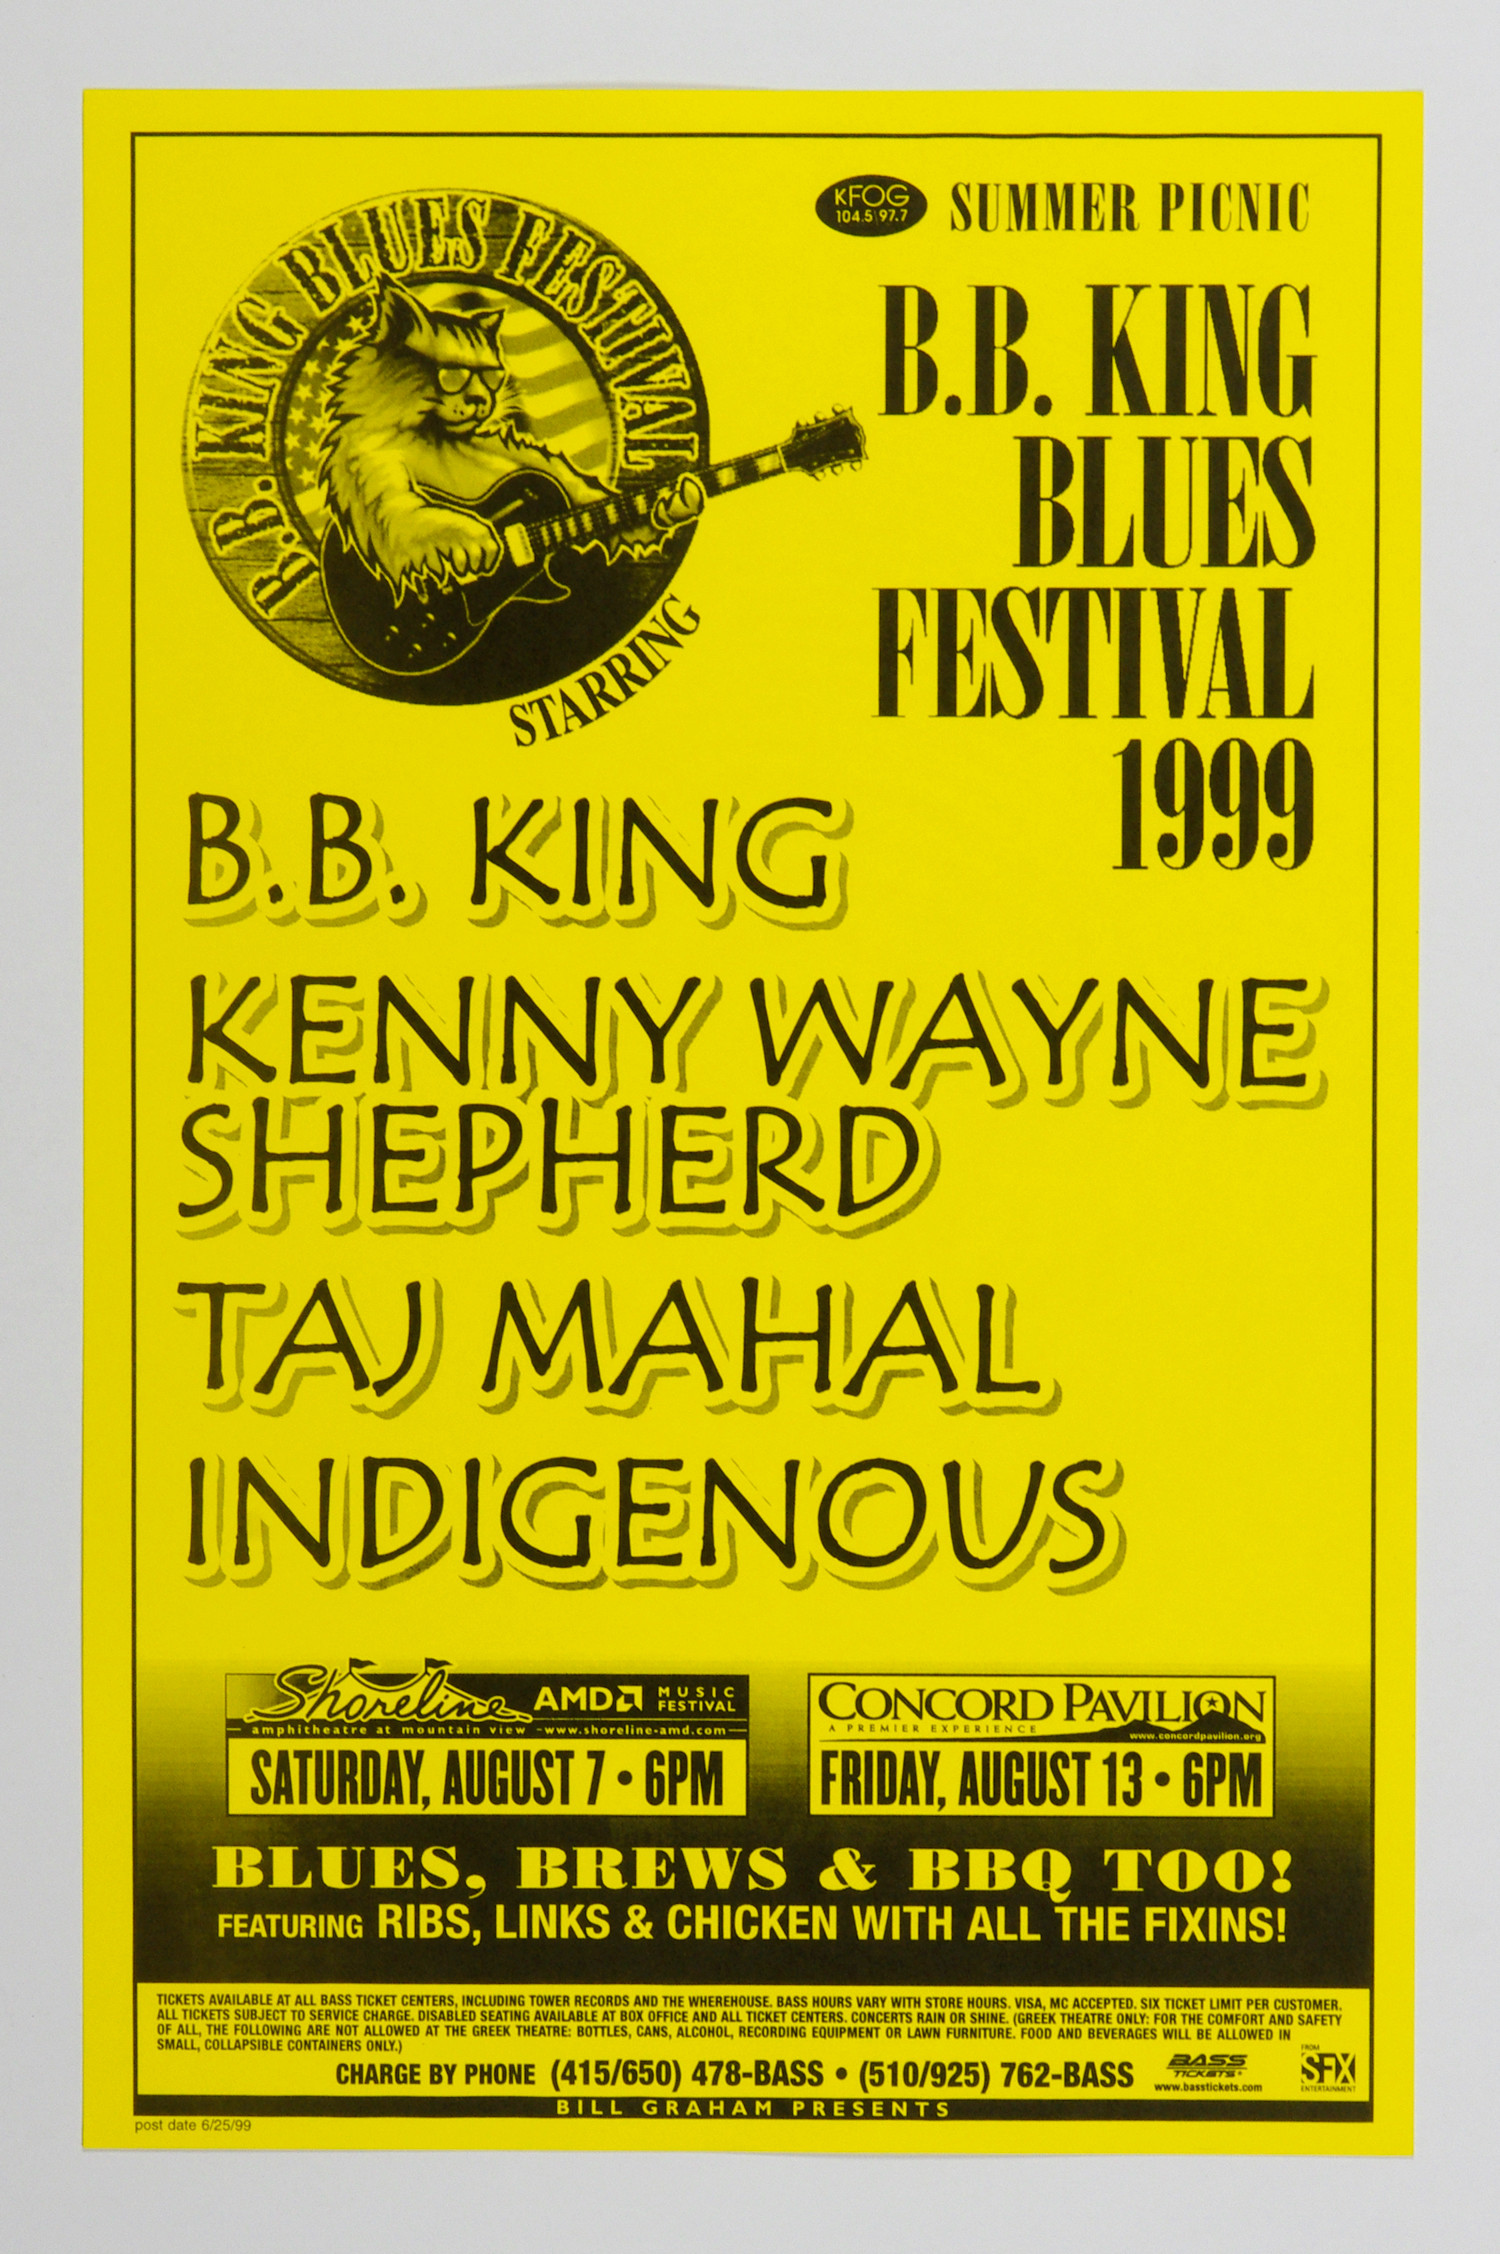 B. B. King Poster 1999 Aug 7 Shoreline Amphitheatre Concord Pavilion